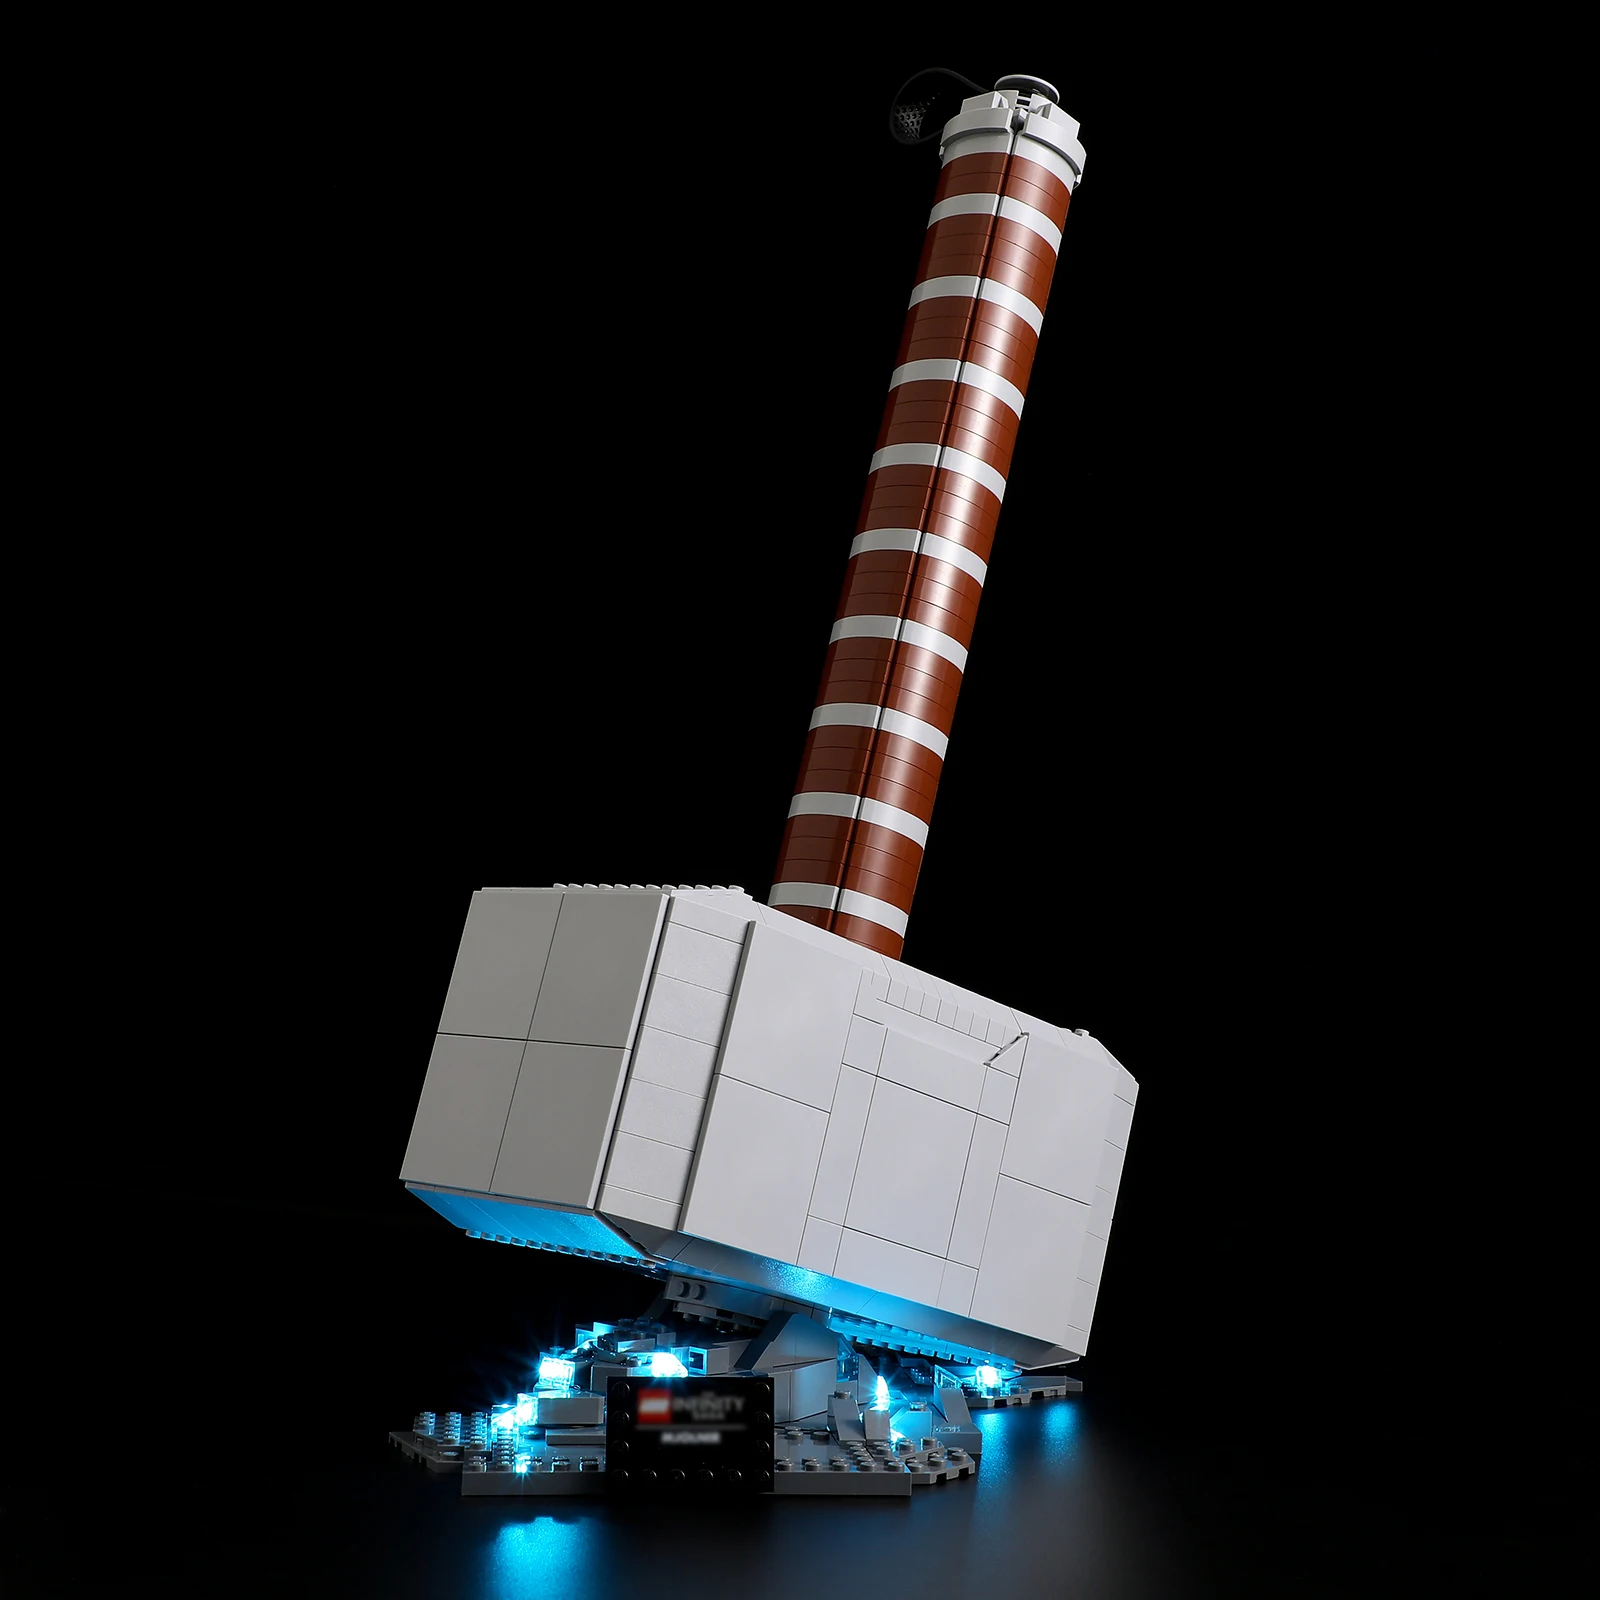 

JOY MAGS Led Light Kit for 76209 Thor's Hammer Building Blocks Set (NOT Include the Model) Bricks Toys for Children